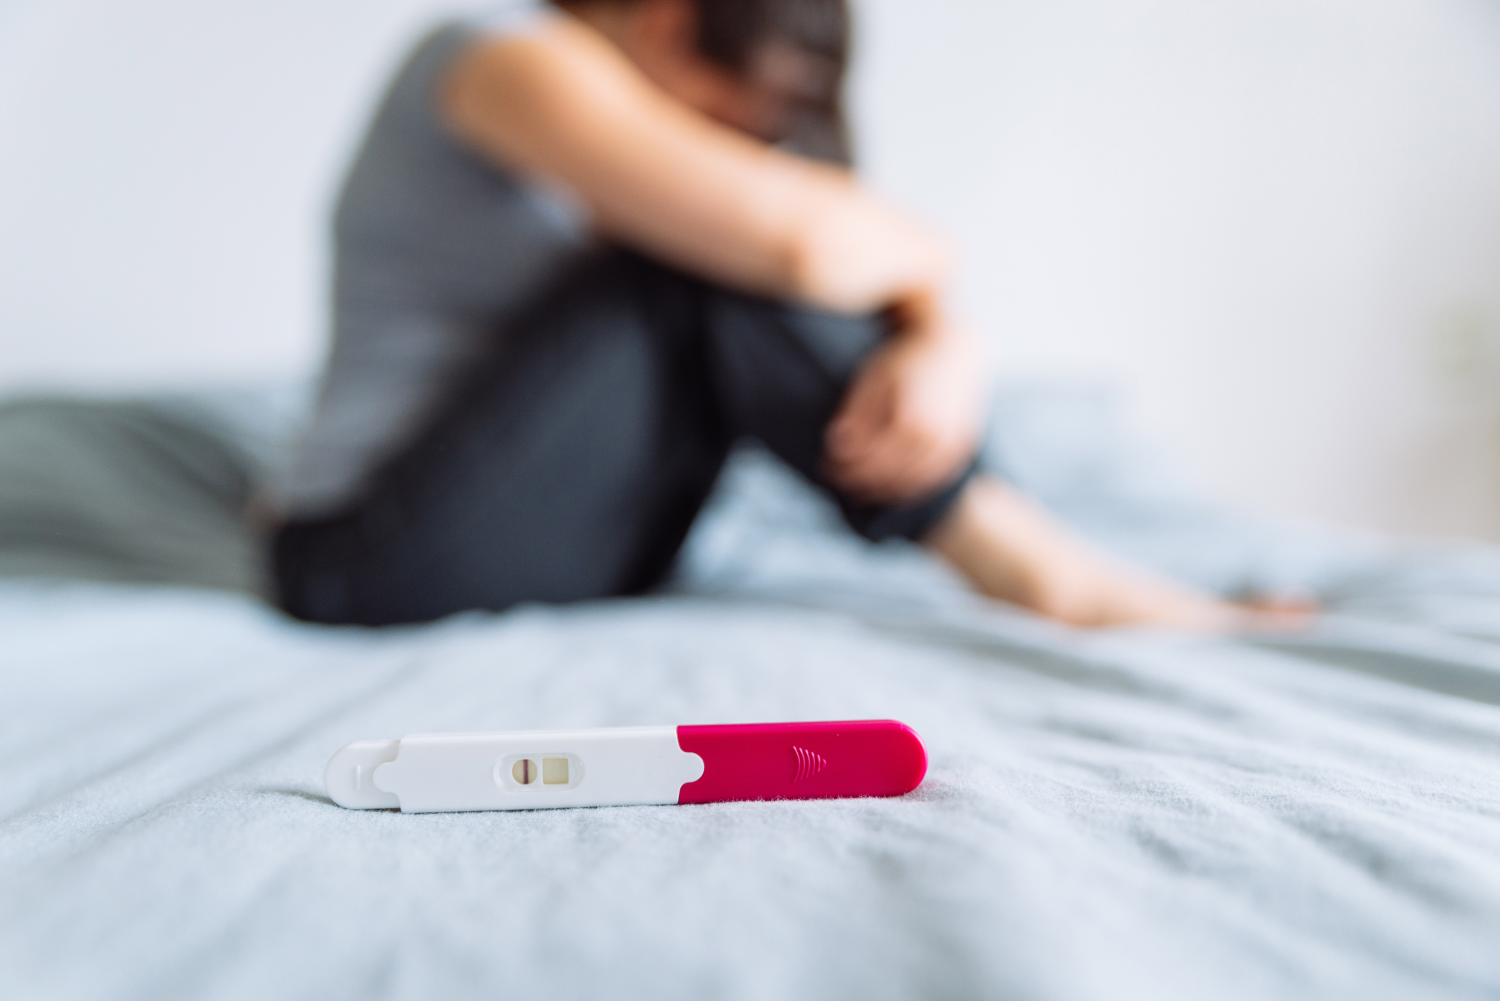 Schwangerschaftstest negativ mit Frau im Hintergrund